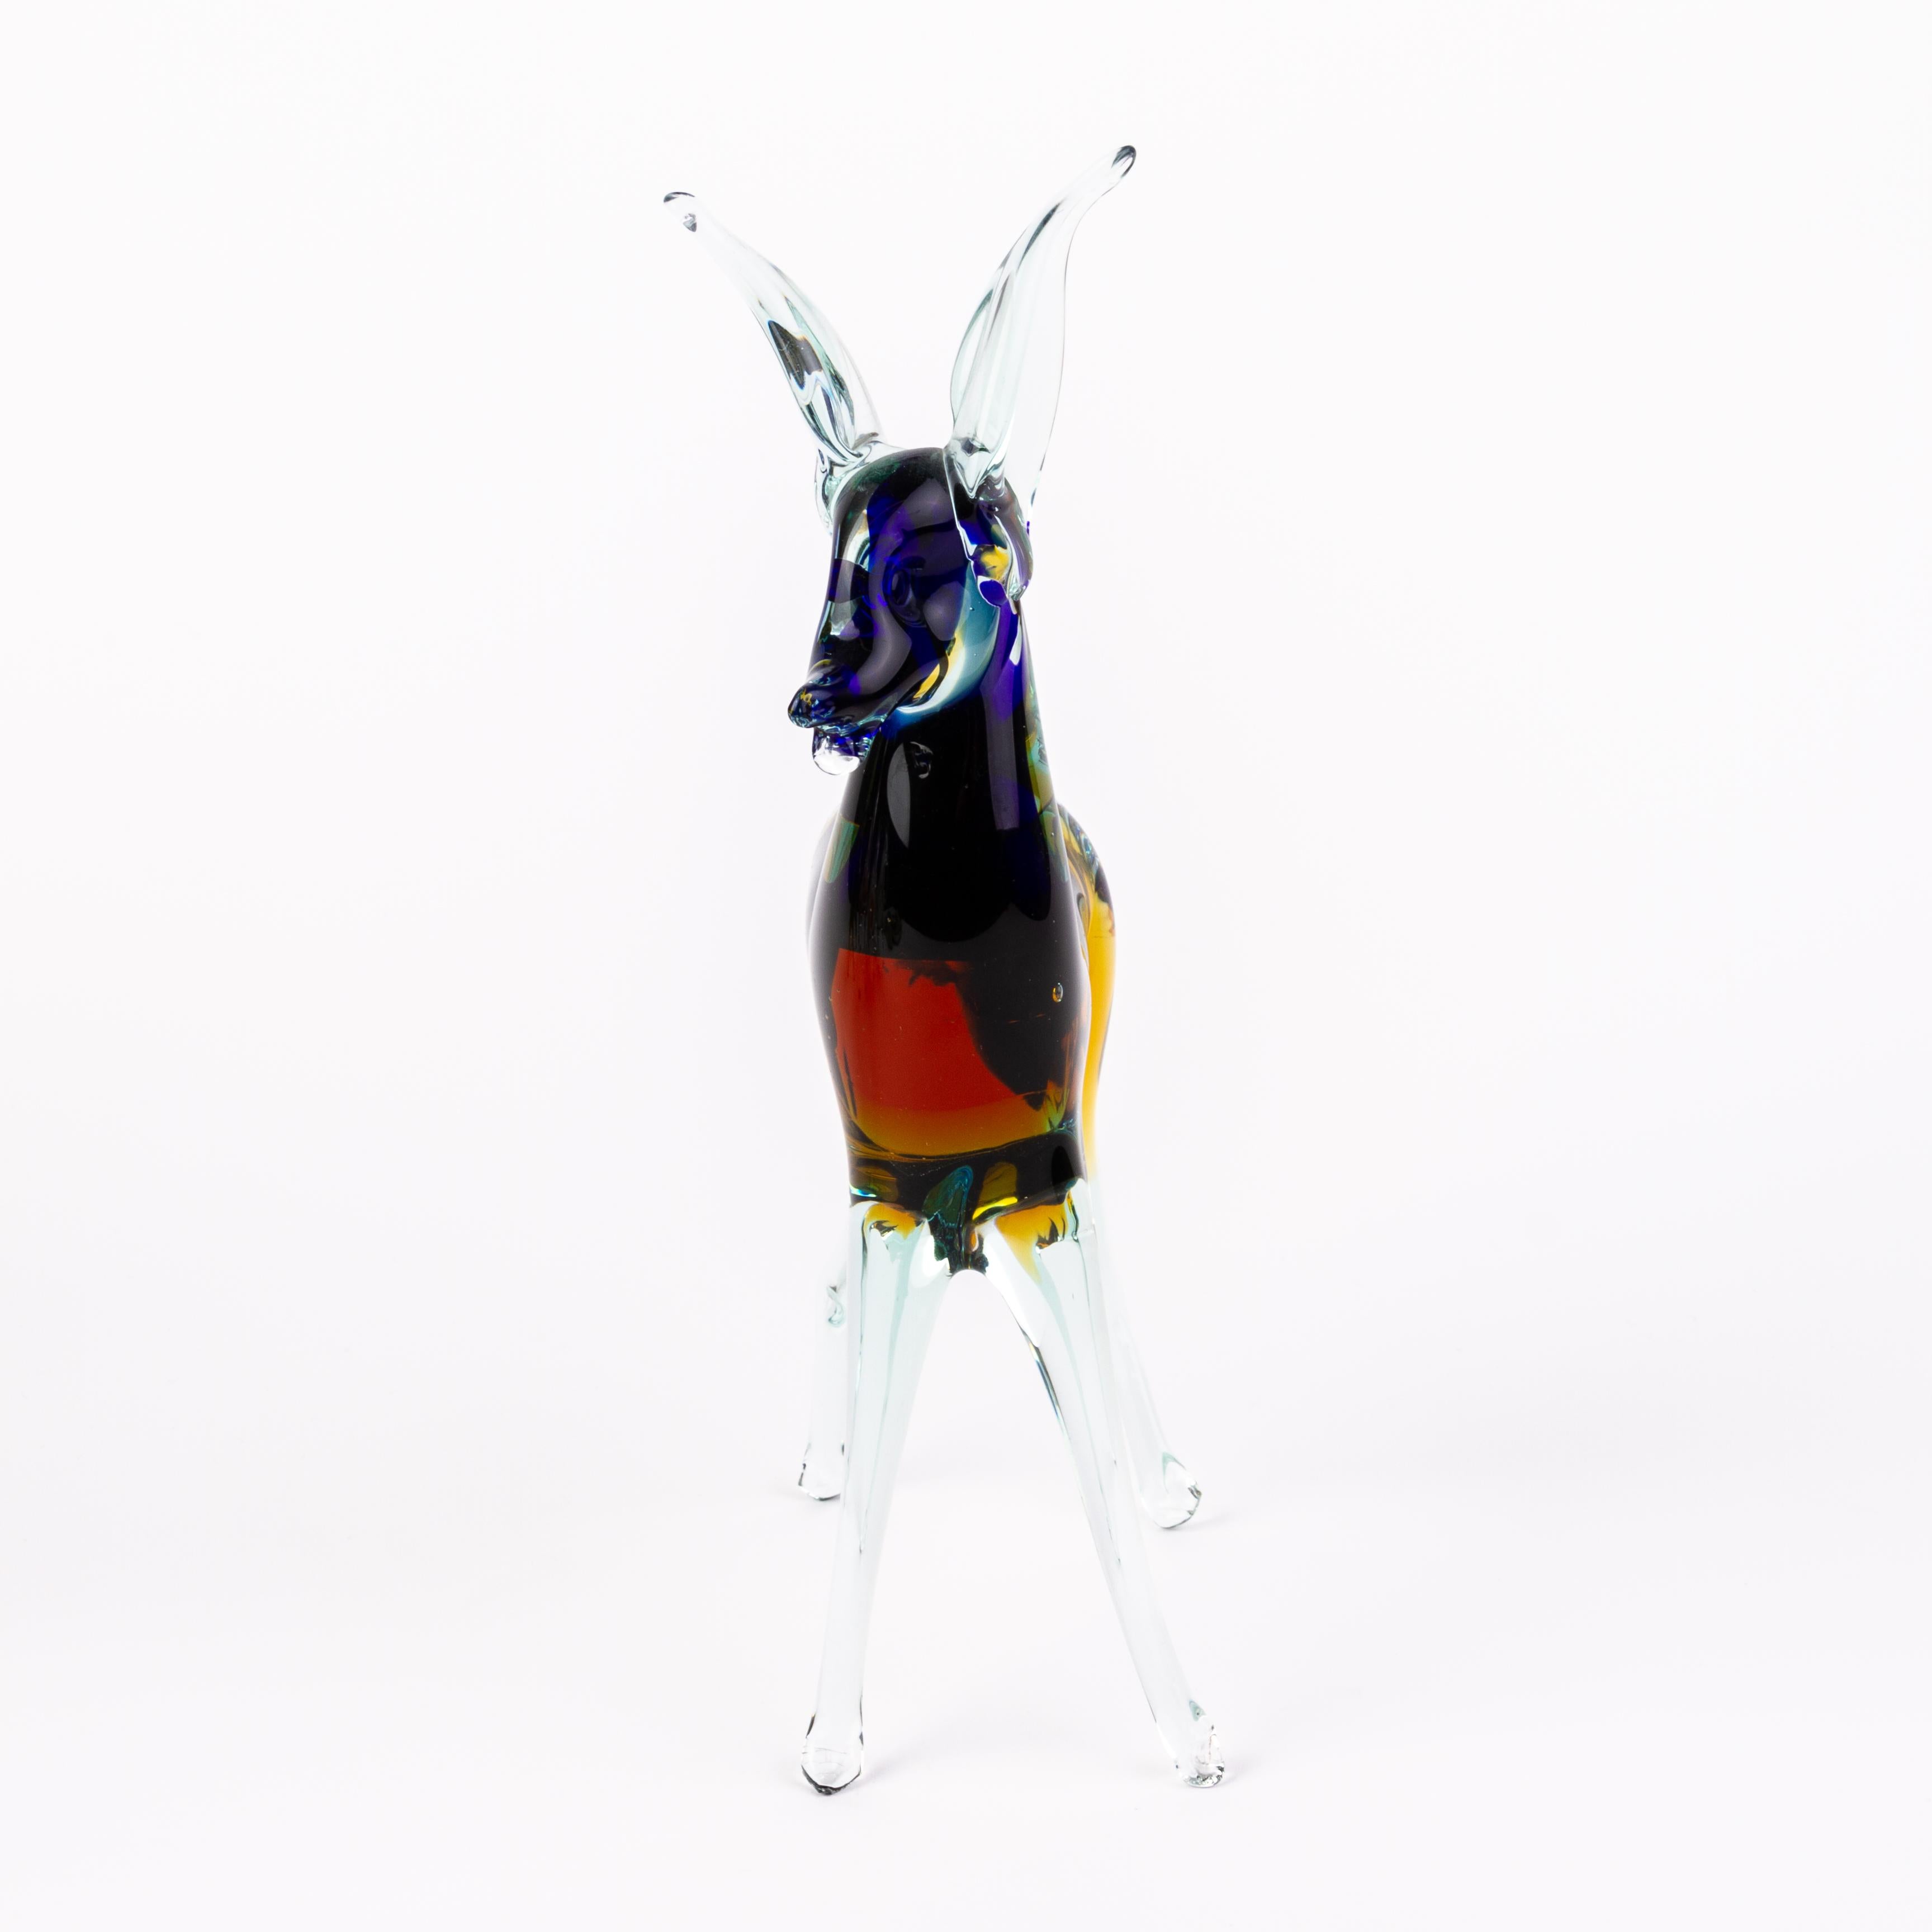 Murano Venetian Glass Sculpture Deer
Good condition
Free international shipping.